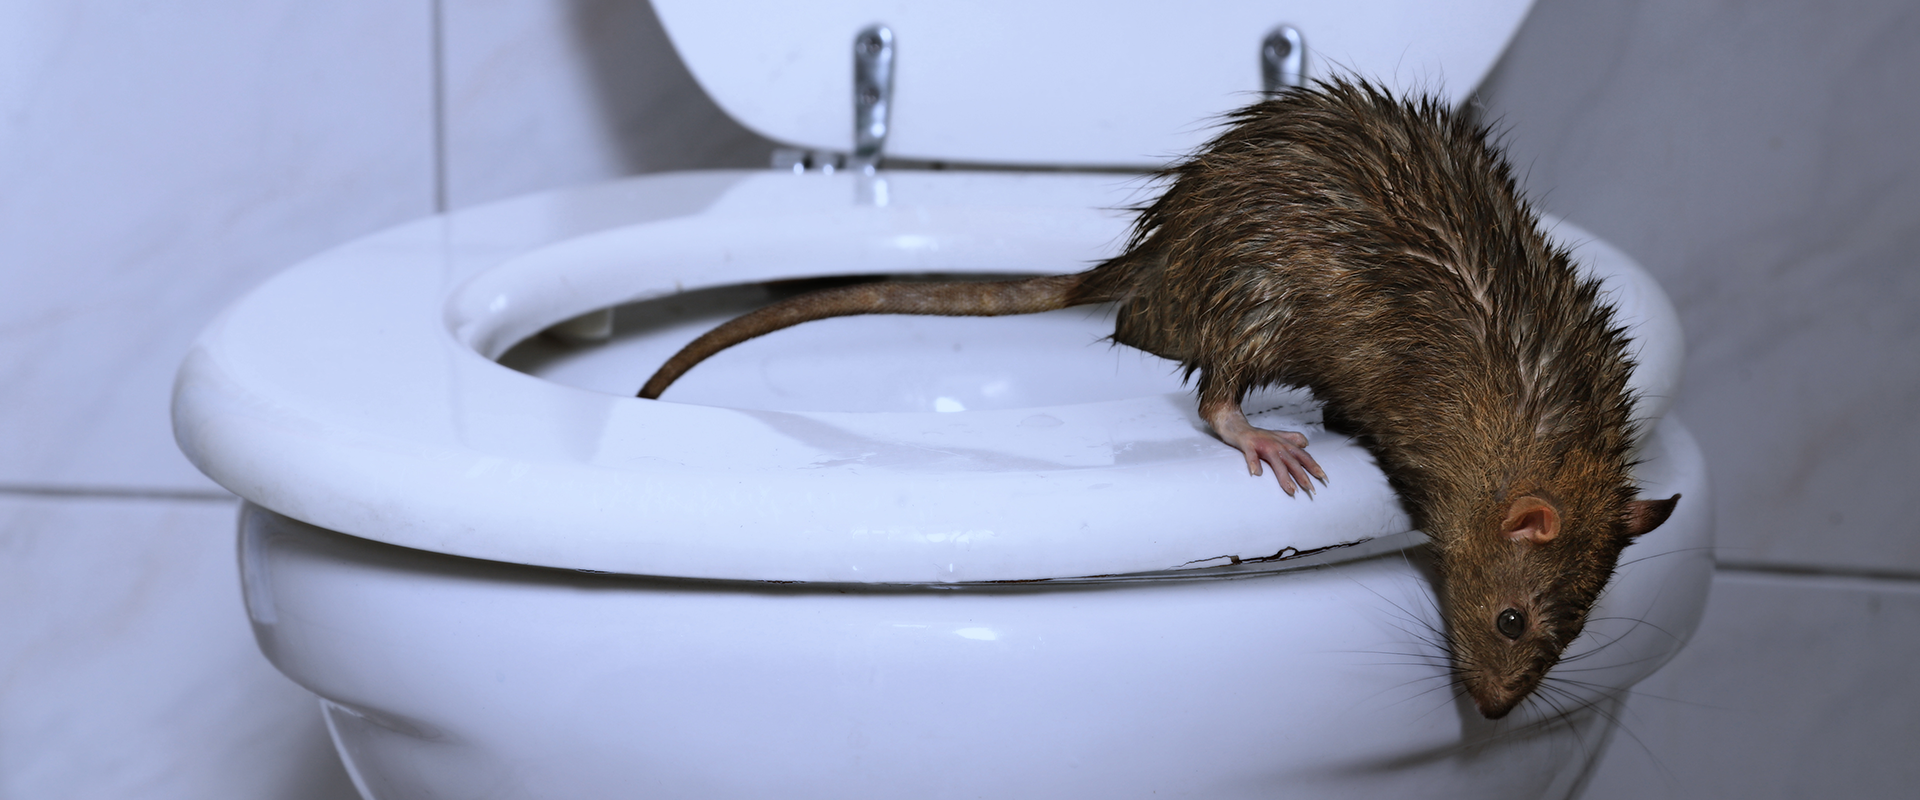 Ratten in der Wohnung: Vermieter müssen handeln 